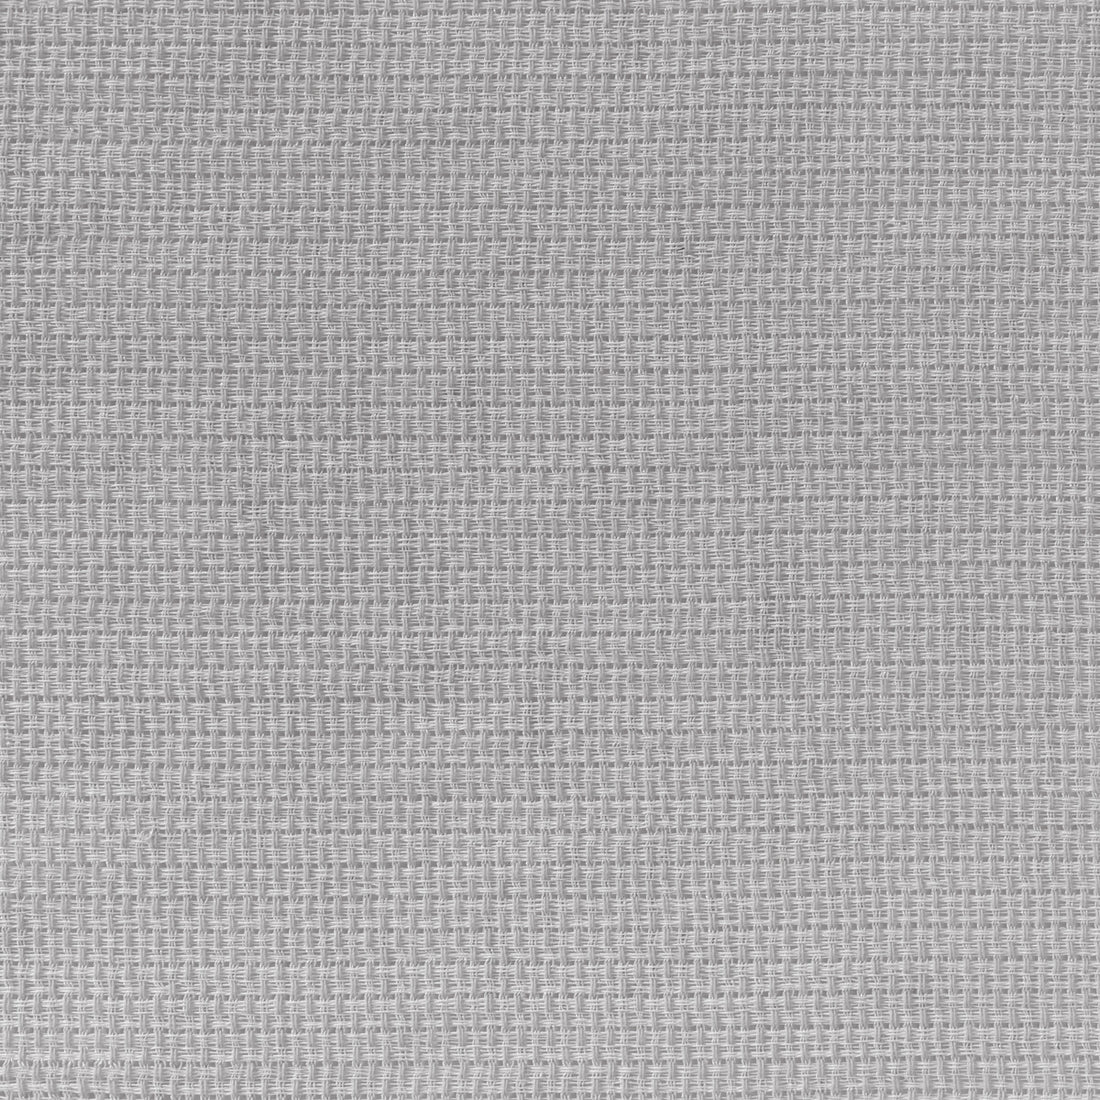 Kravet Basics fabric in 4882-1101 color - pattern 4882.1101.0 - by Kravet Basics